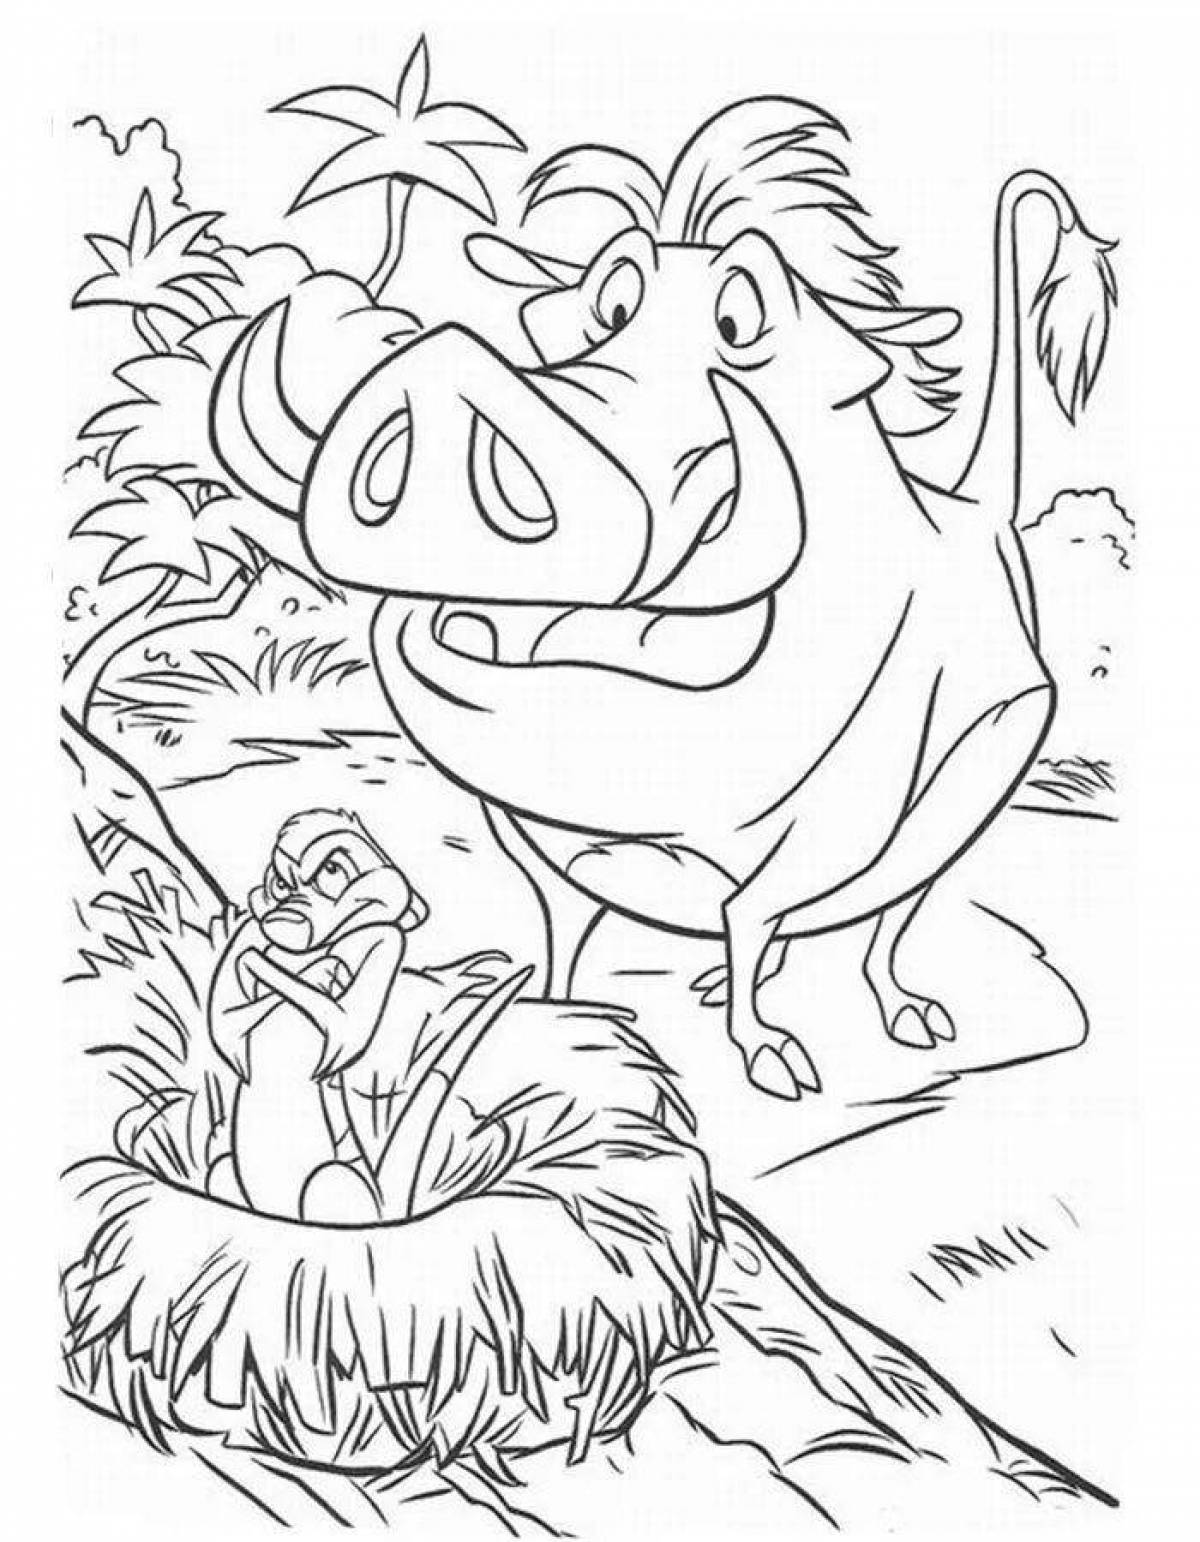 Timon and Pumbaa fun coloring